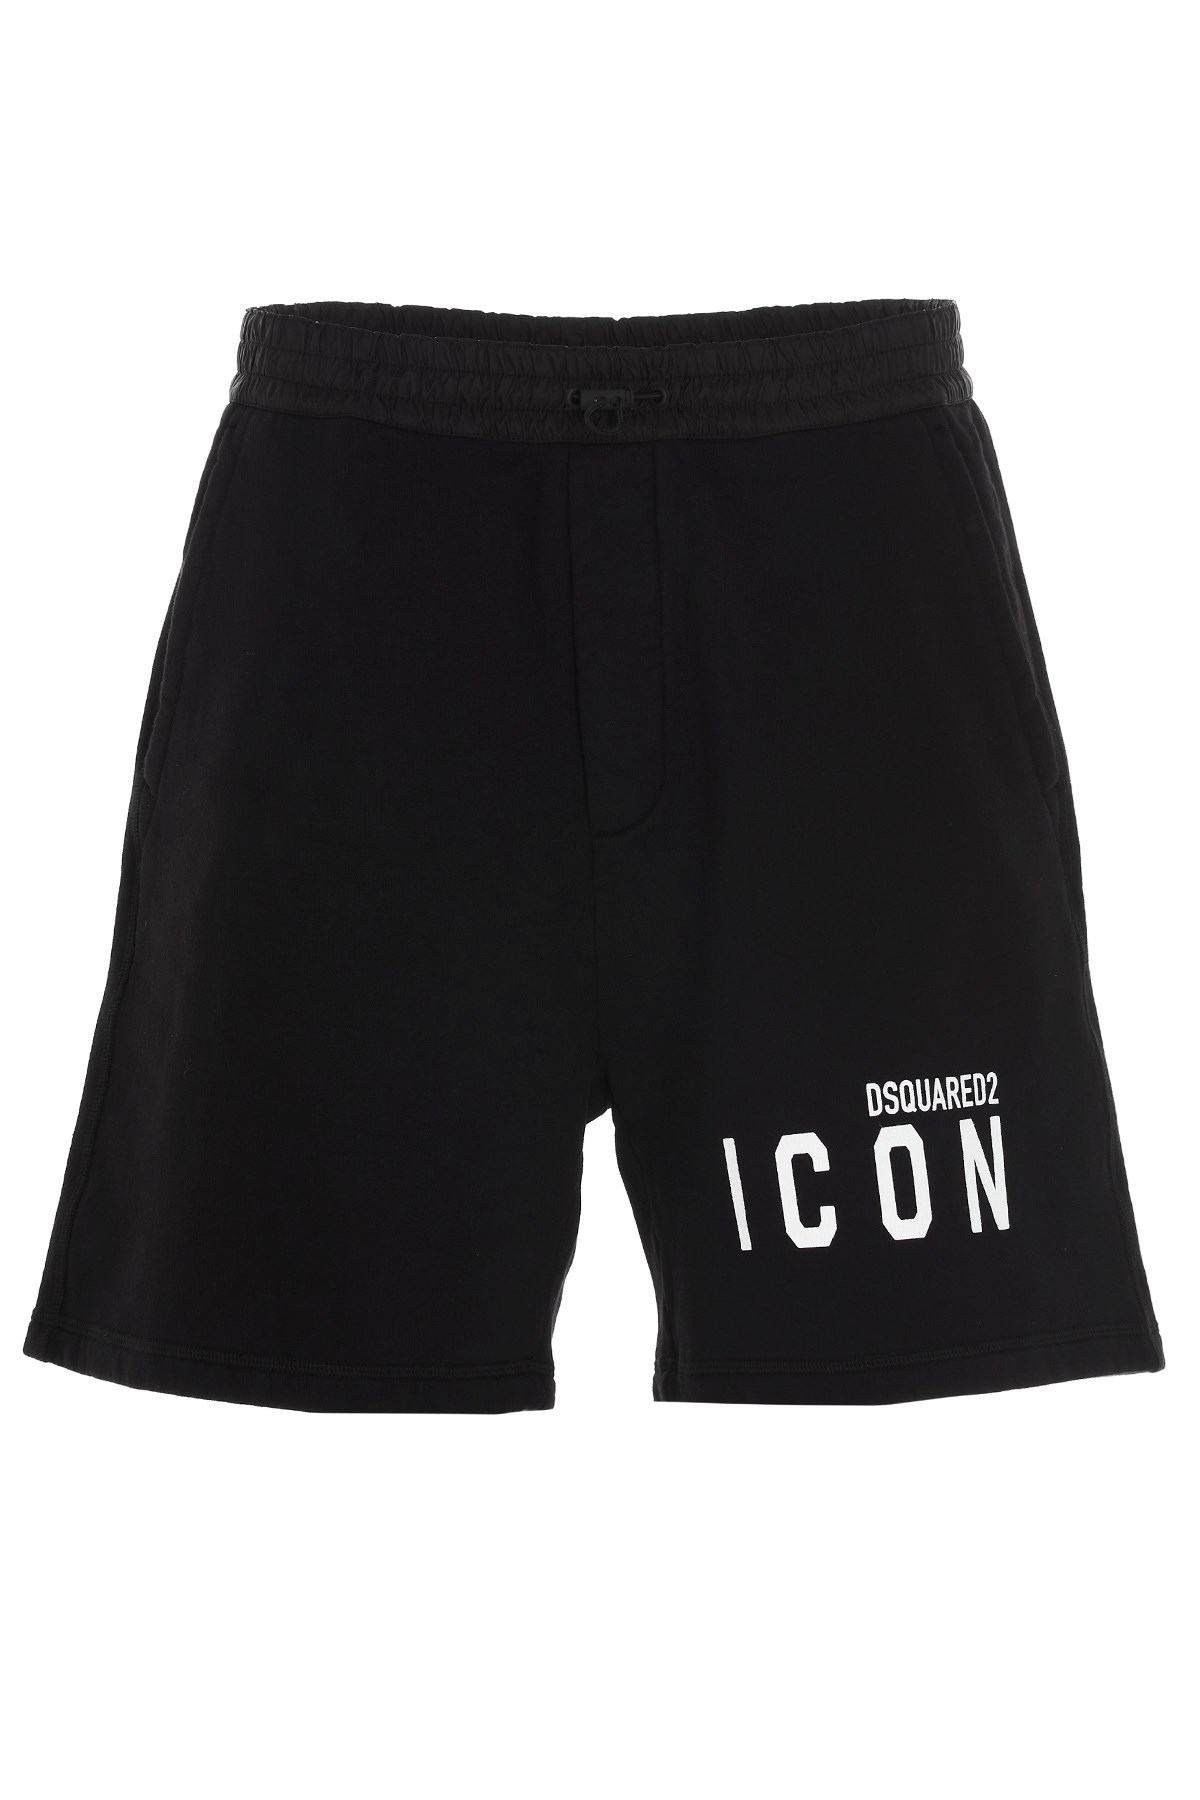 DSQUARED2 Bermuda-Shorts 'Icon'